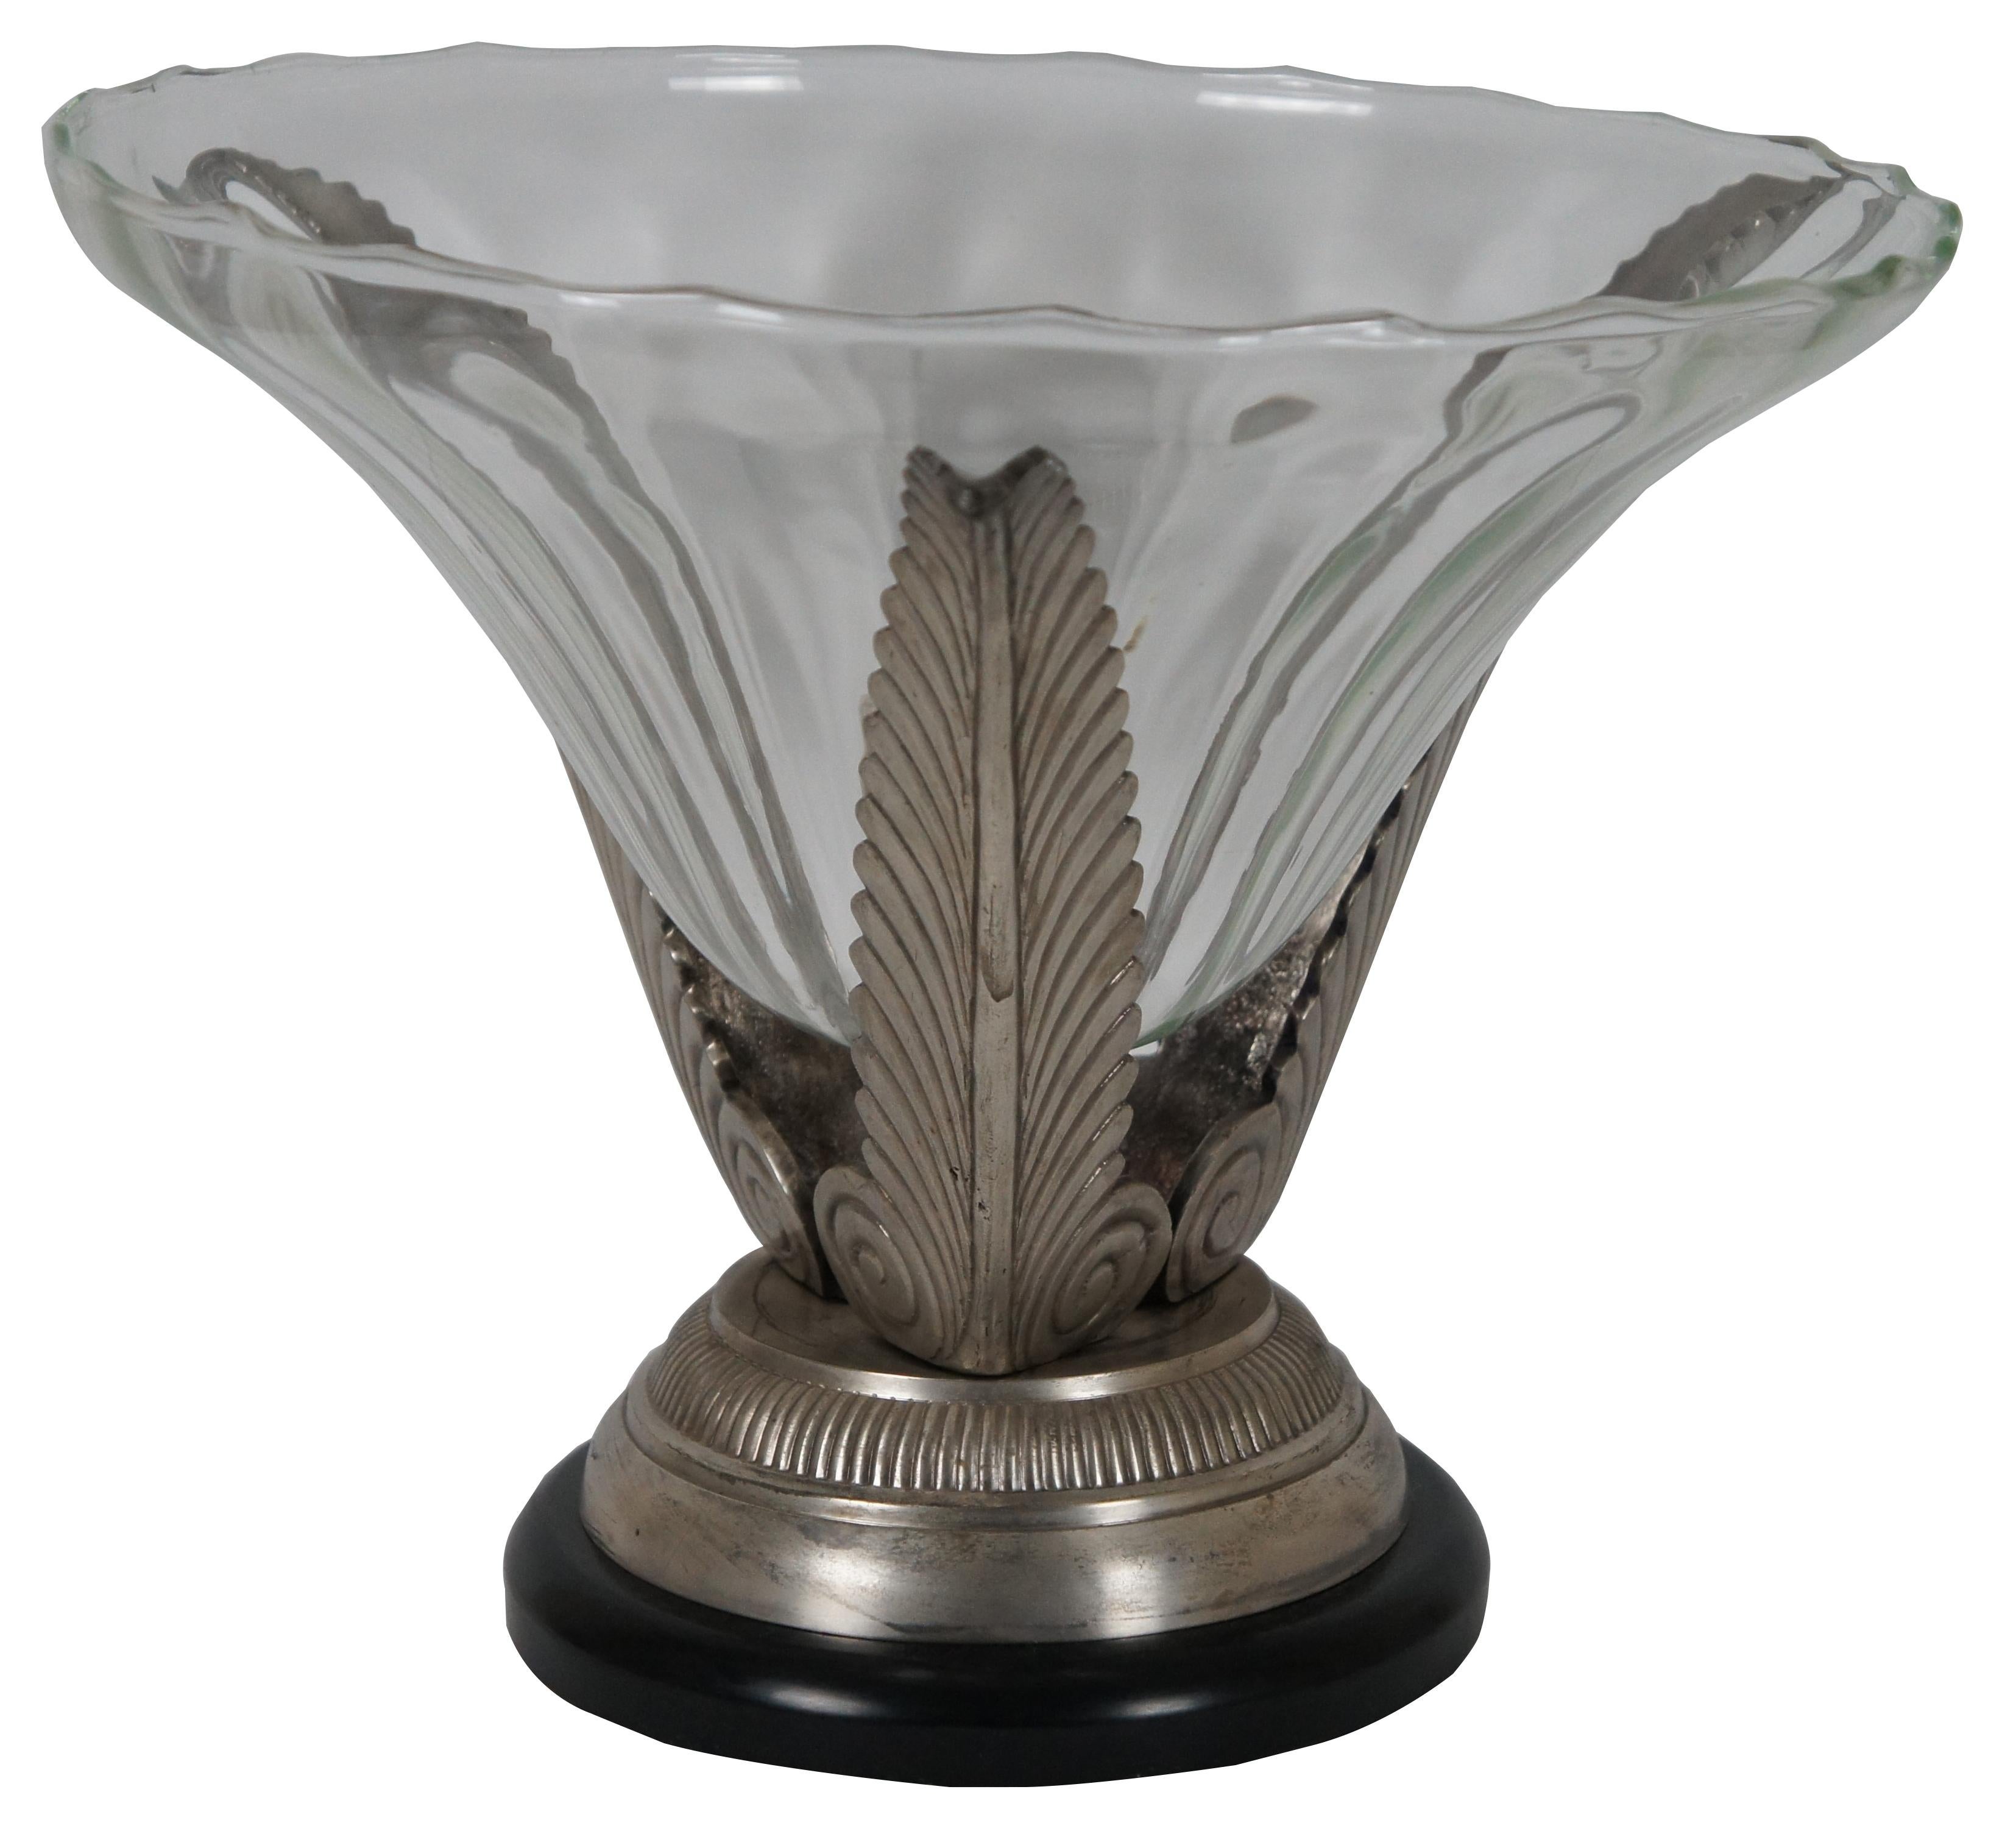 Cette coupe de centre de table en verre fabriquée à la main présente une texture légèrement ondulée et repose sur un trio de feuilles d'acanthe en métal peint de couleur argentée sur un socle noir et argenté.